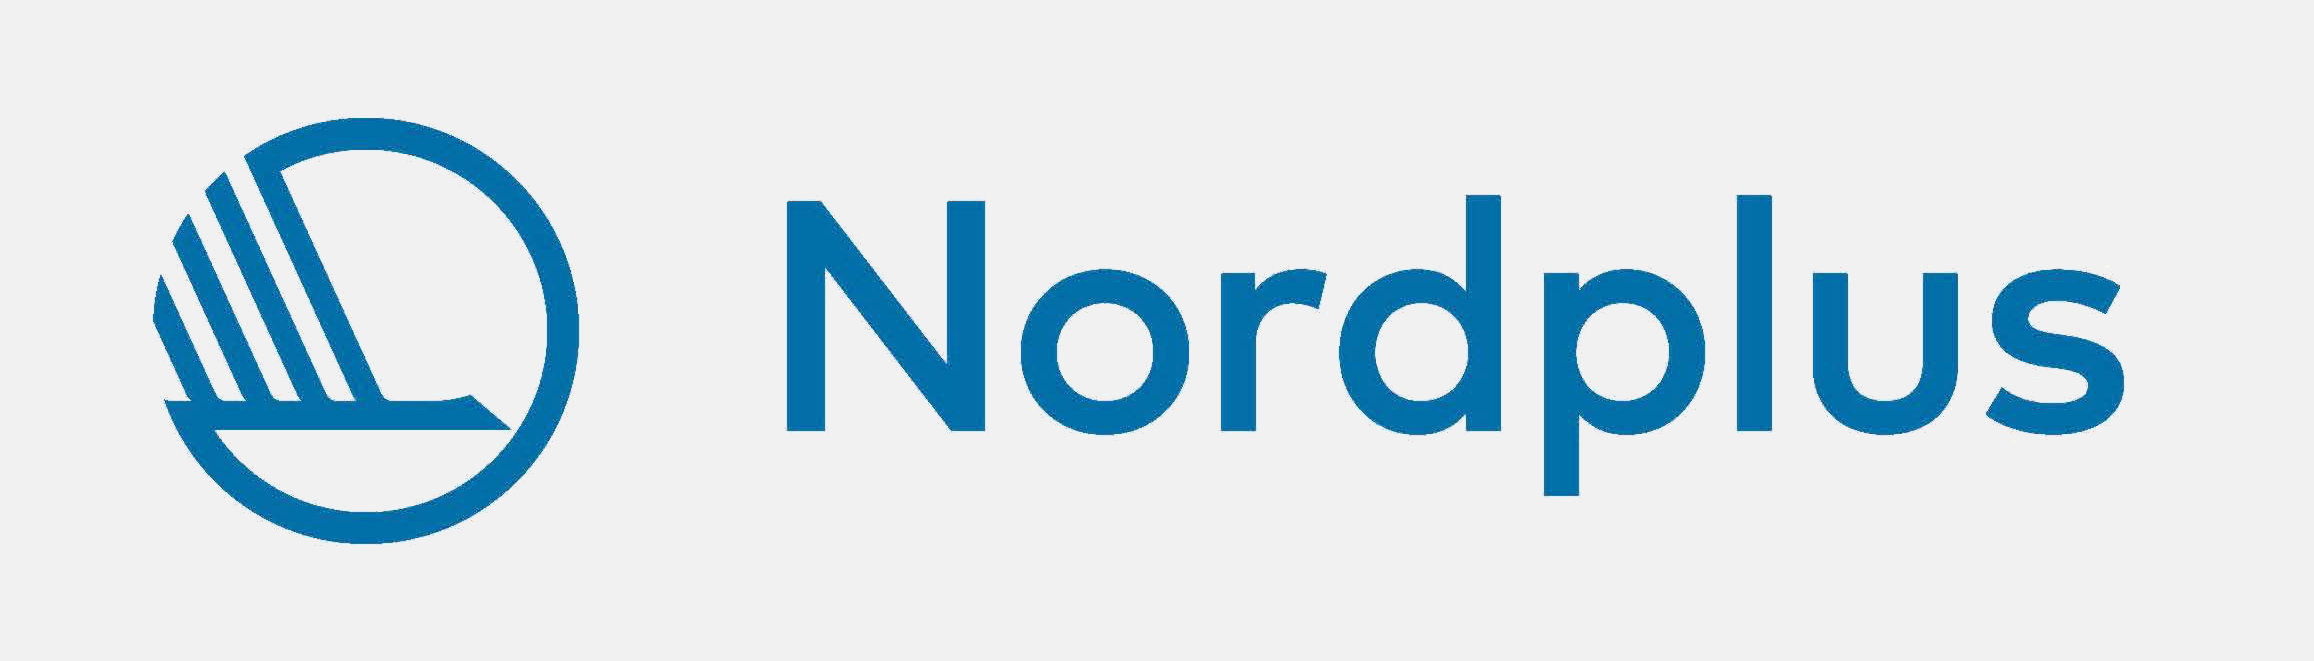 Nordplus logo